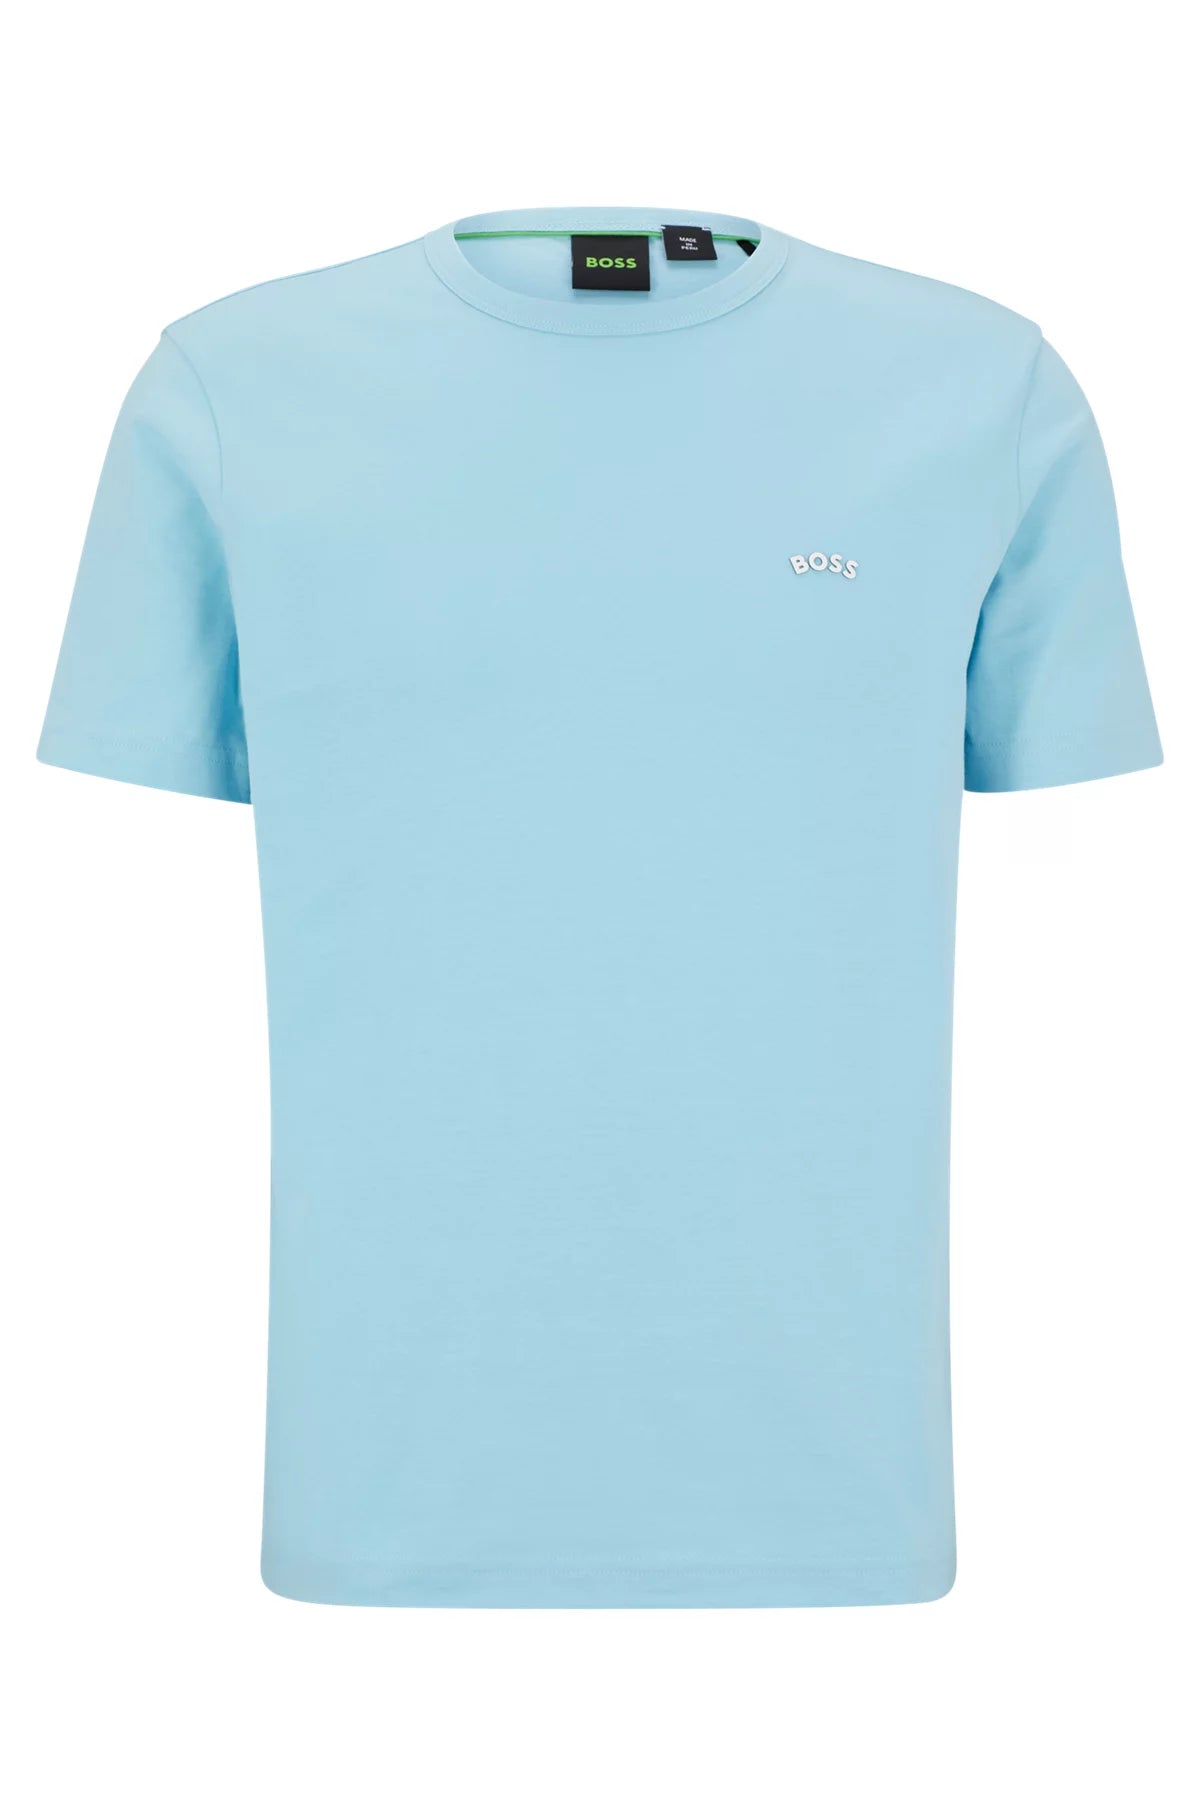 BOSS Green Curved Logo T-Shirt - 451 Light Blue - Escape Menswear